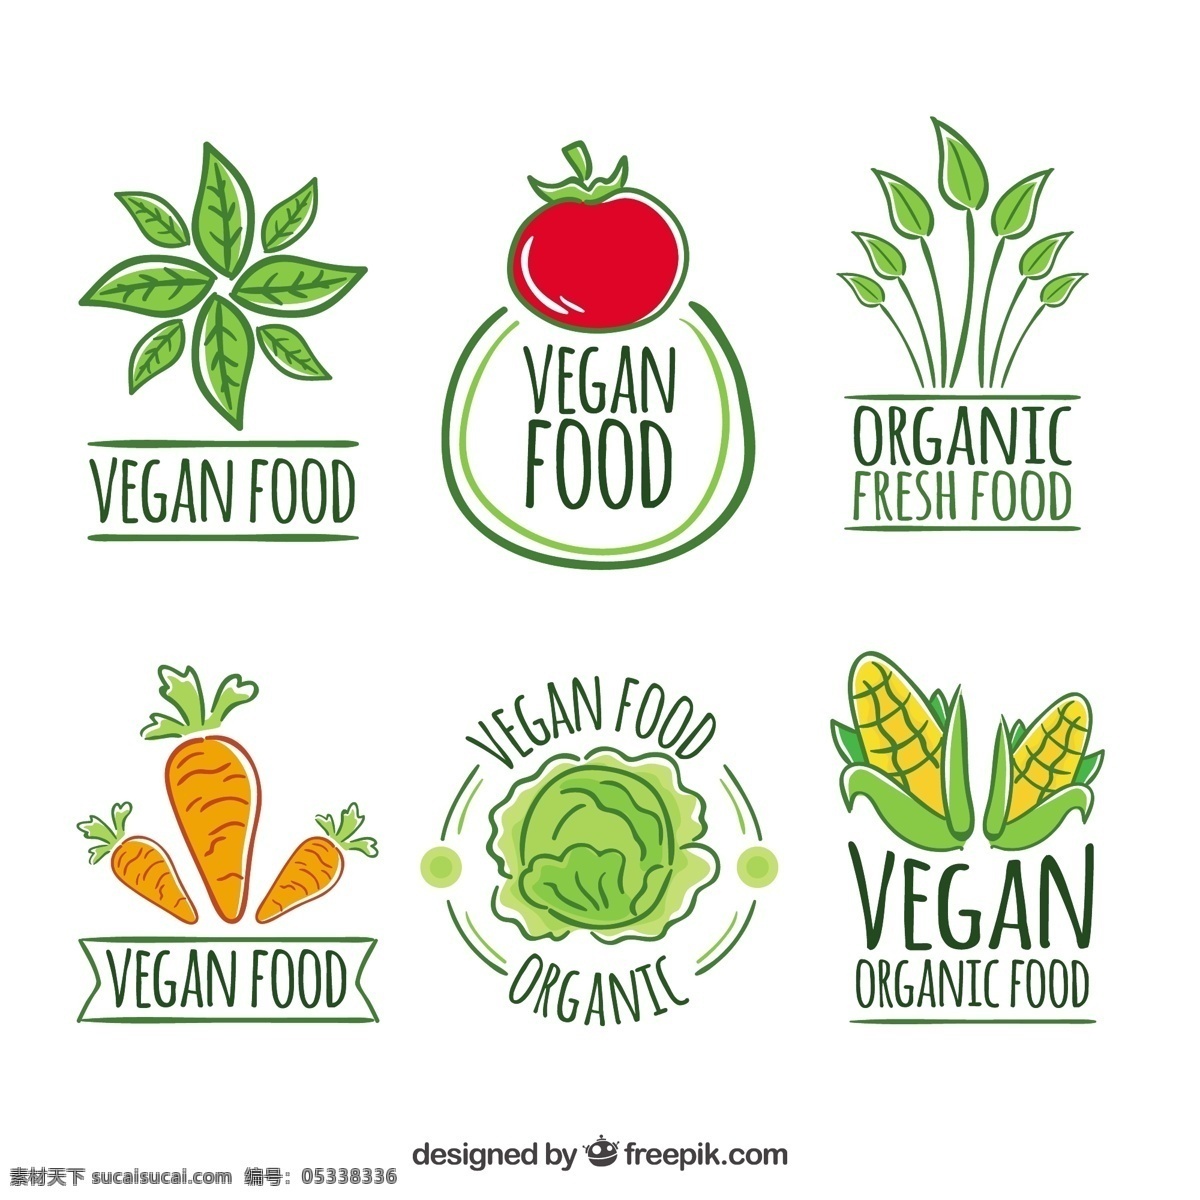 可爱 手绘 素食 餐厅 标志 古董 食品 商业 徽章 手工绘制 水果 蔬菜 标签 生态 企业 有机 公司 品牌 绘图 贴纸